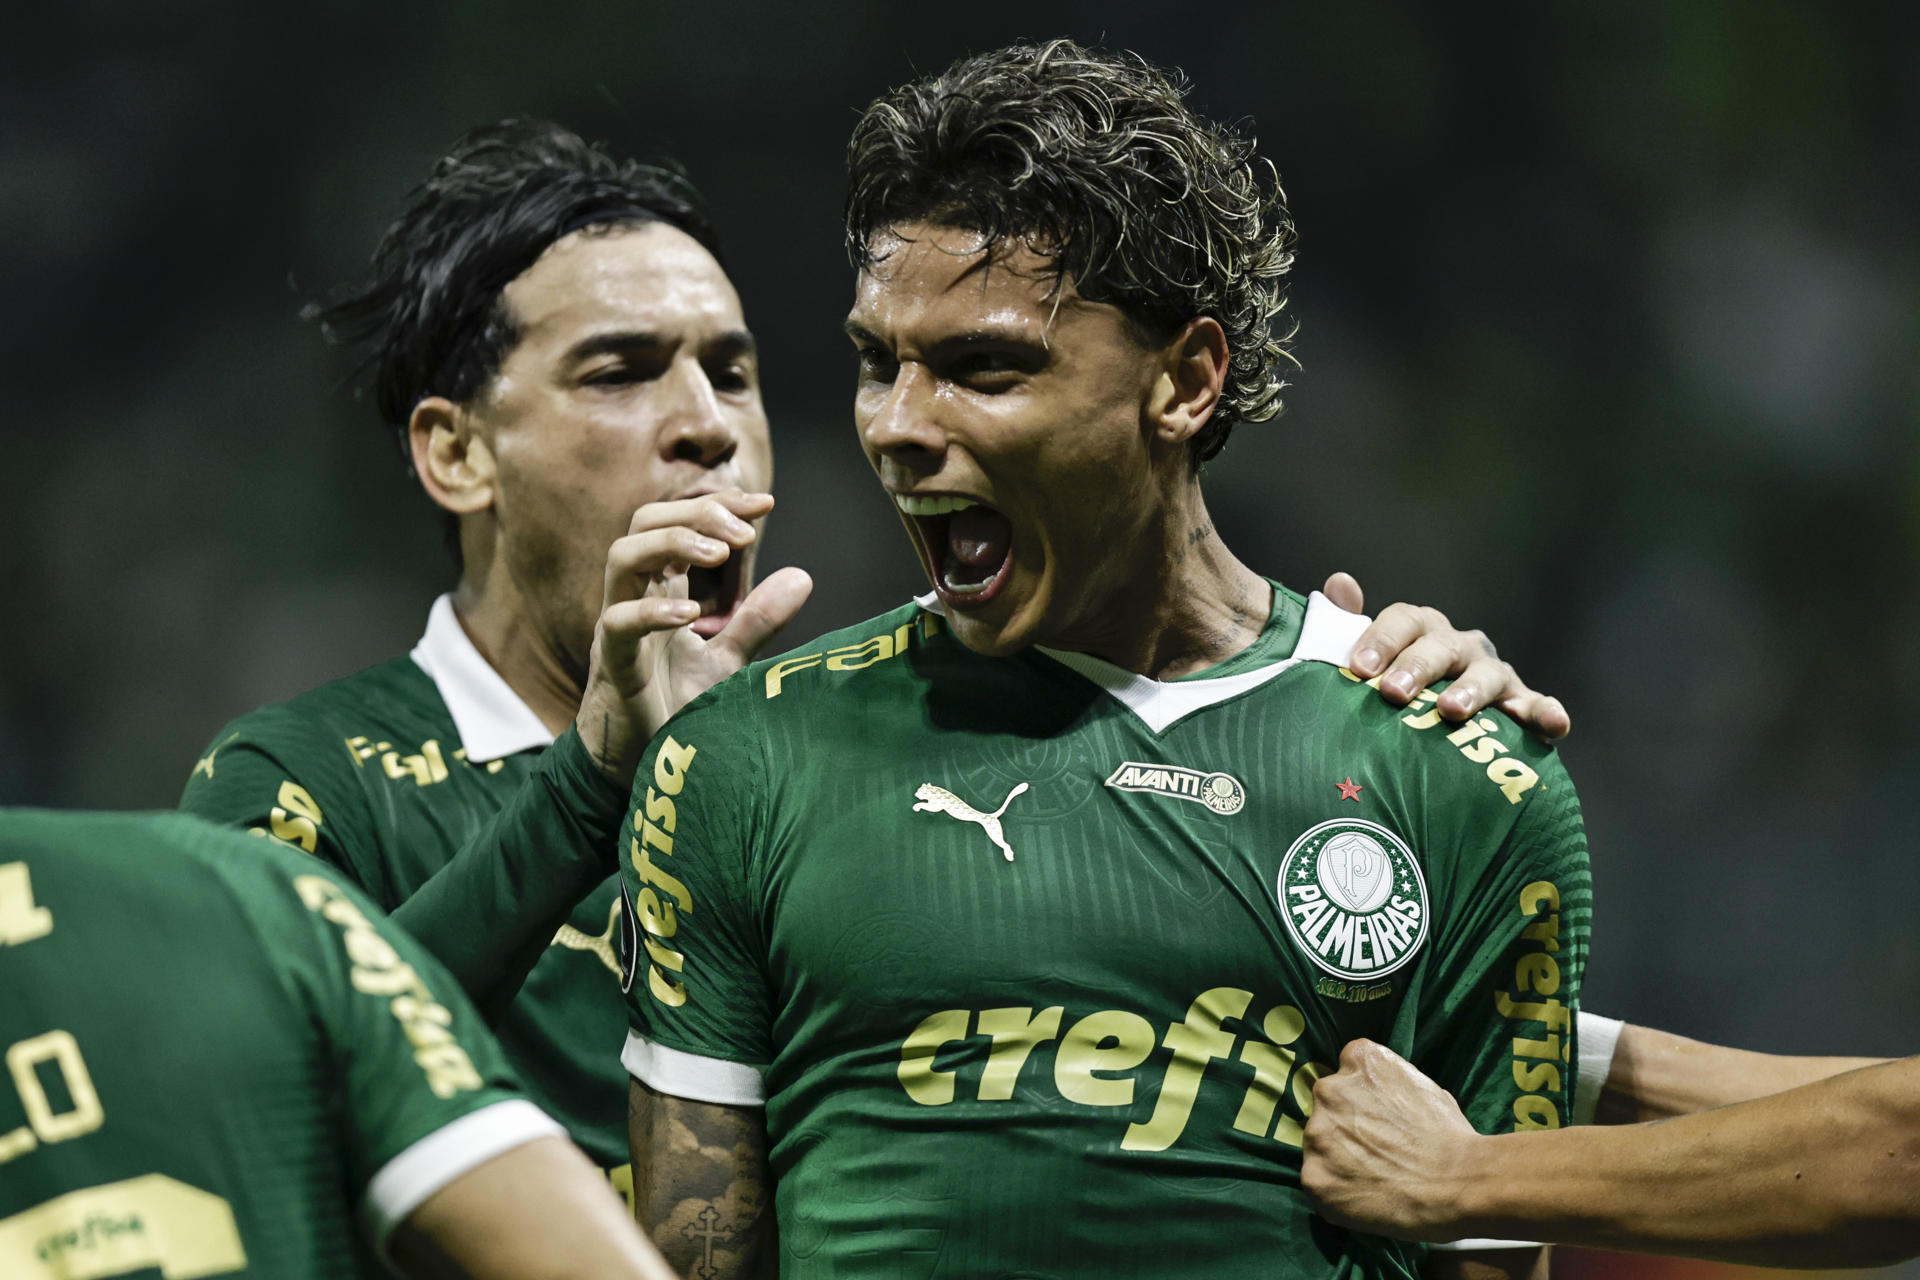 El colombiano Richard Ríos celebra su gol, el primero del Palmeiras en el partido de este miércoles ante Independiente del Valle (IDV) por la Copa Libertadores en el estadio Allianz Parque en Sao Paulo (Brasil). EFE/ Isaac Fontana